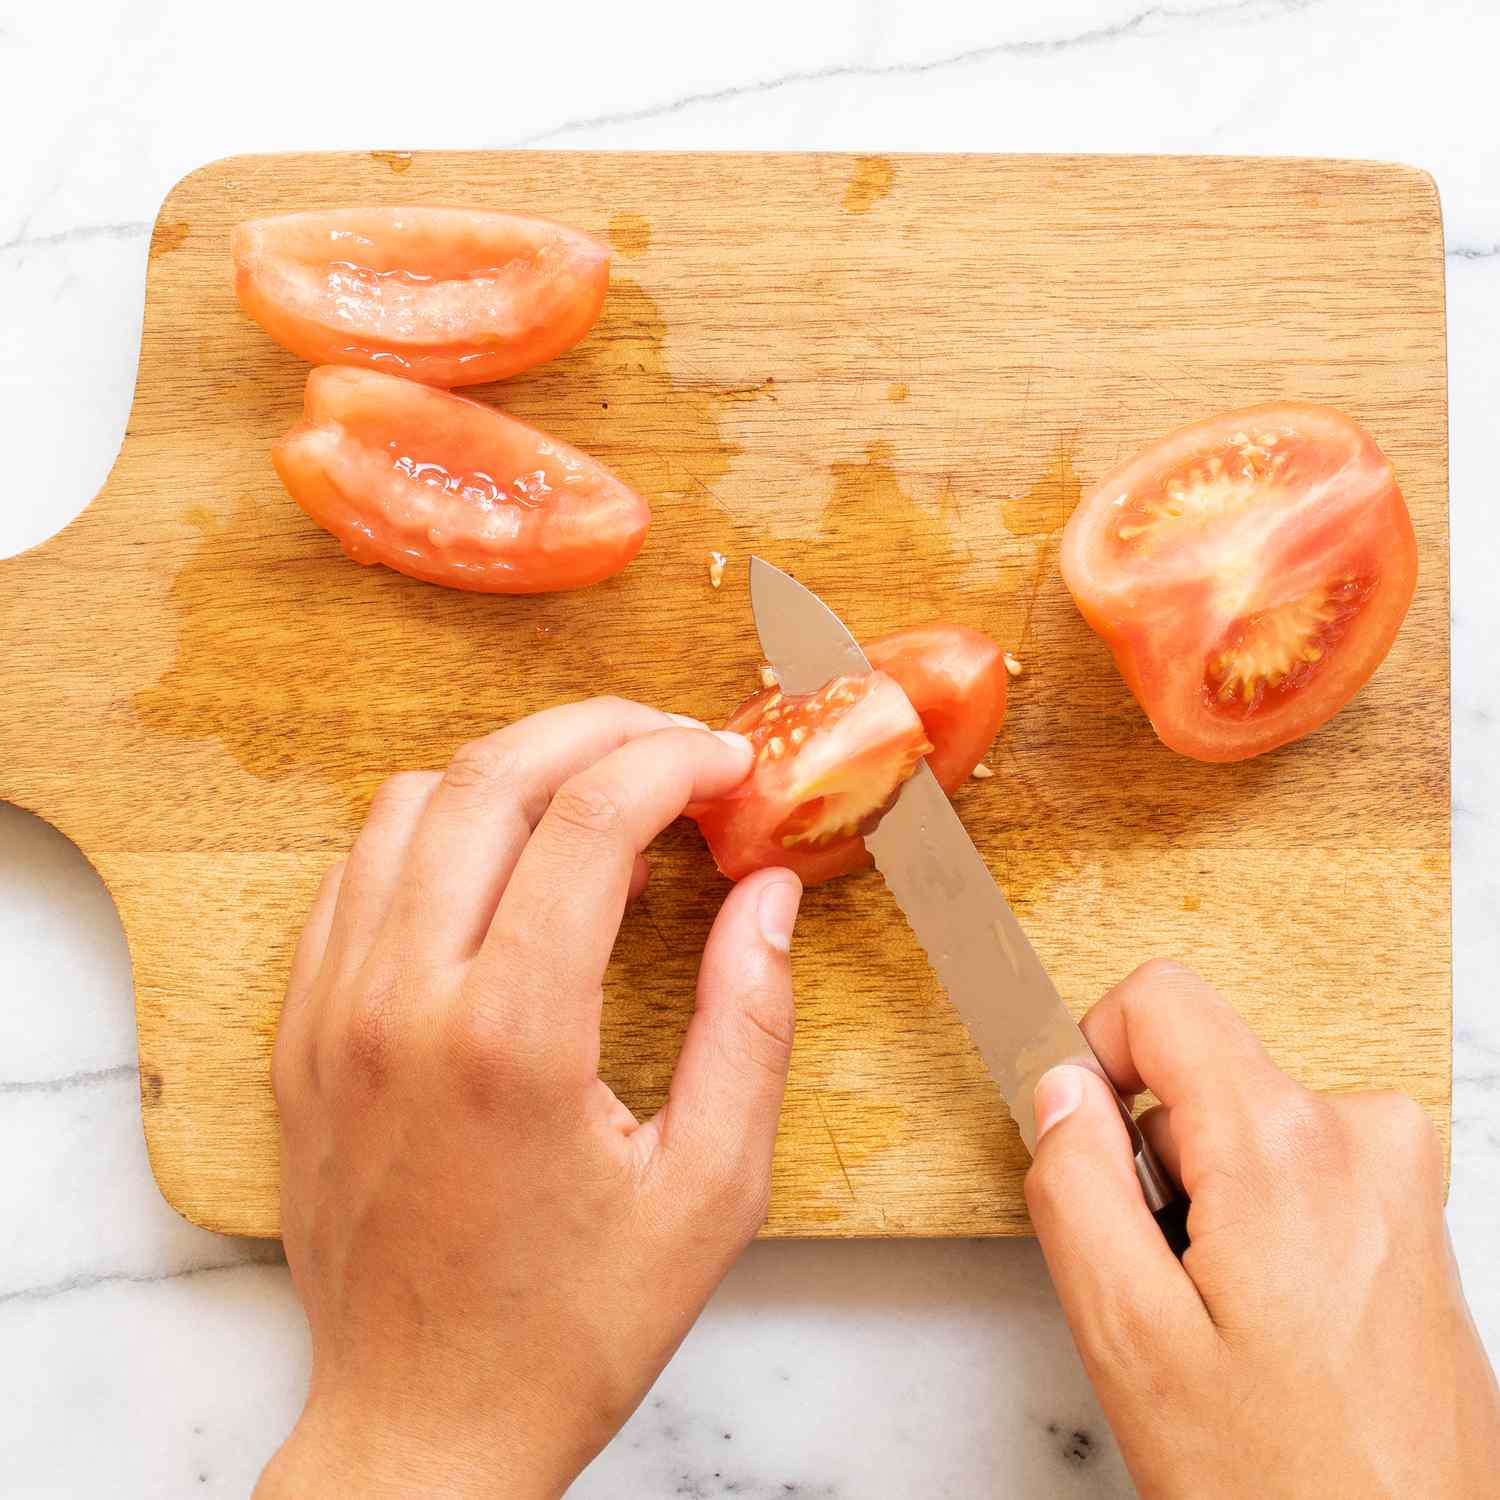 Mano usando un cuchillo para cortar un tomate en cubitos sobre una tabla de cortar